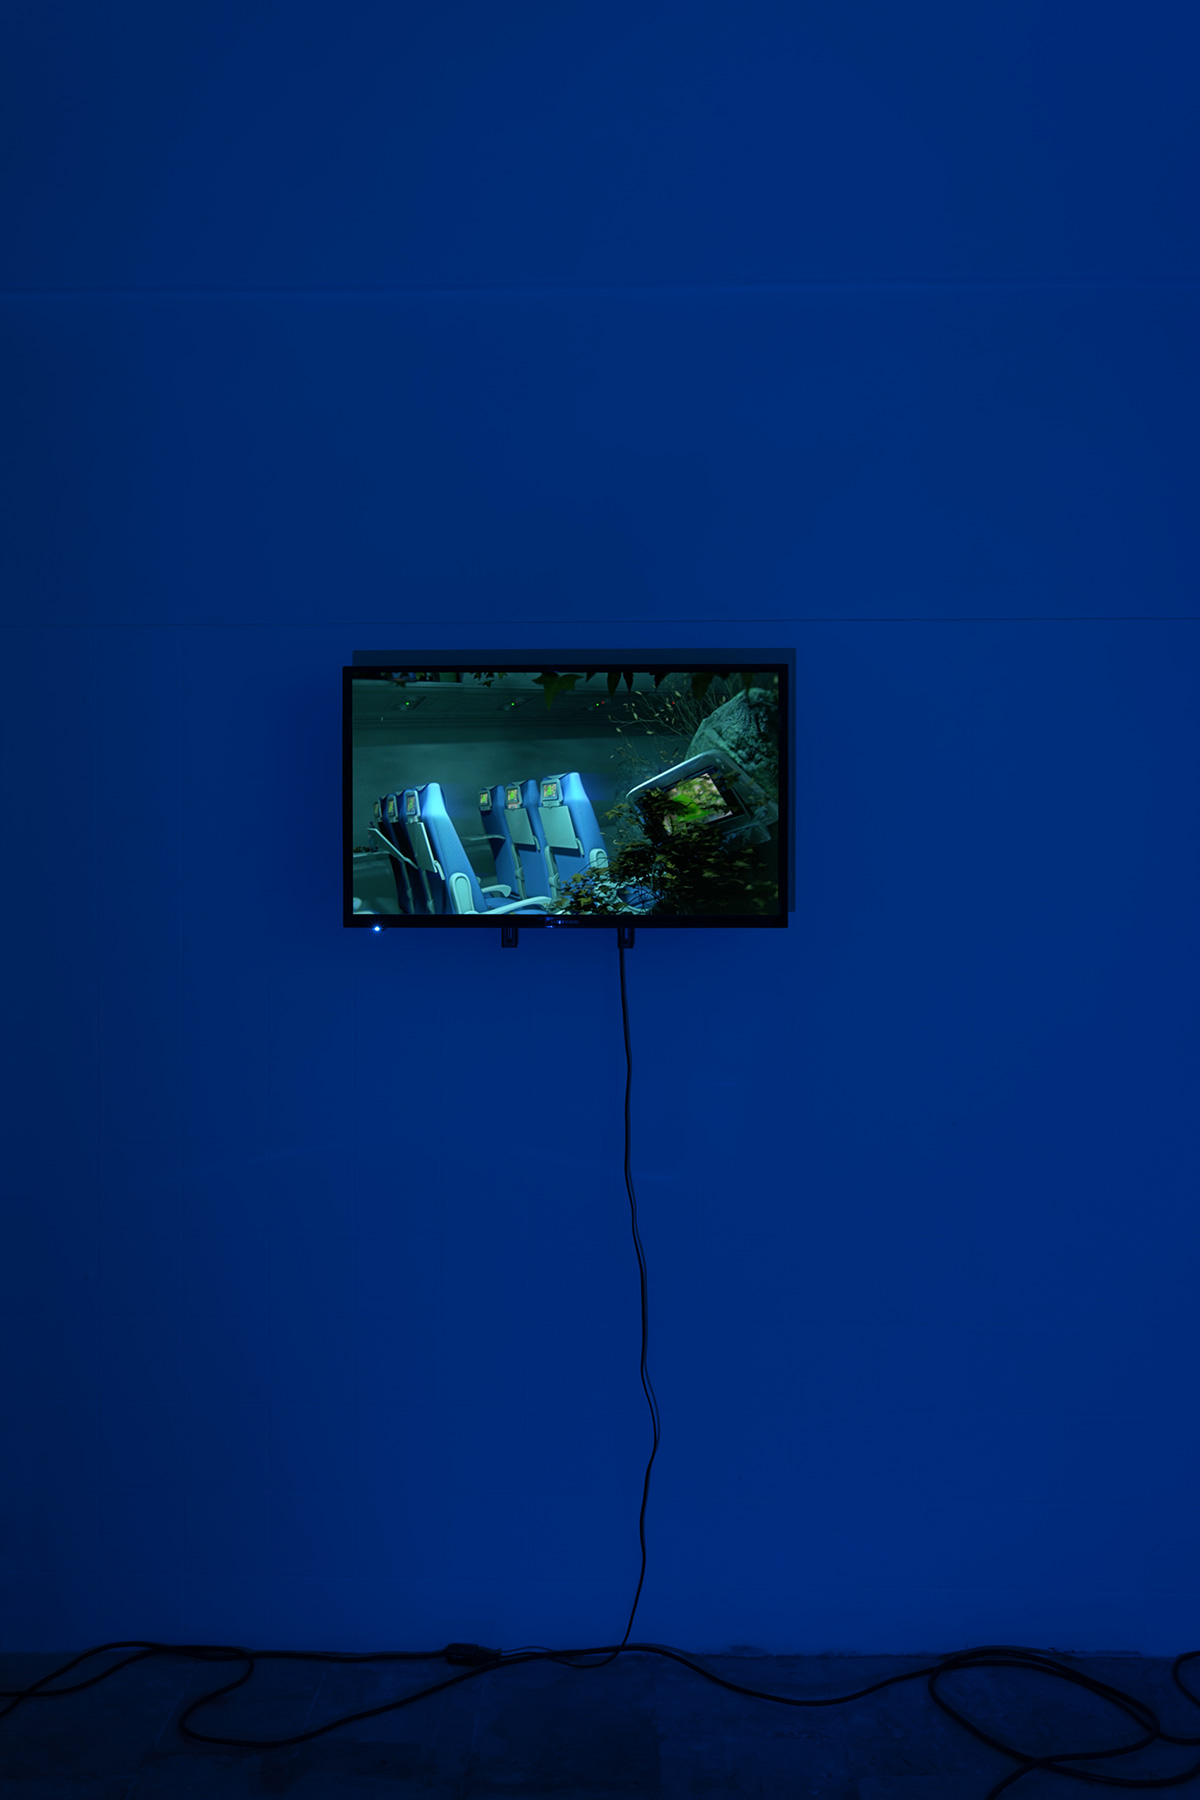 Rustan Söderling, Eternal September, 2017, Installazione video a quattro canali. Durata 18 min 11 sec. Dimensioni variabili (dettaglio).